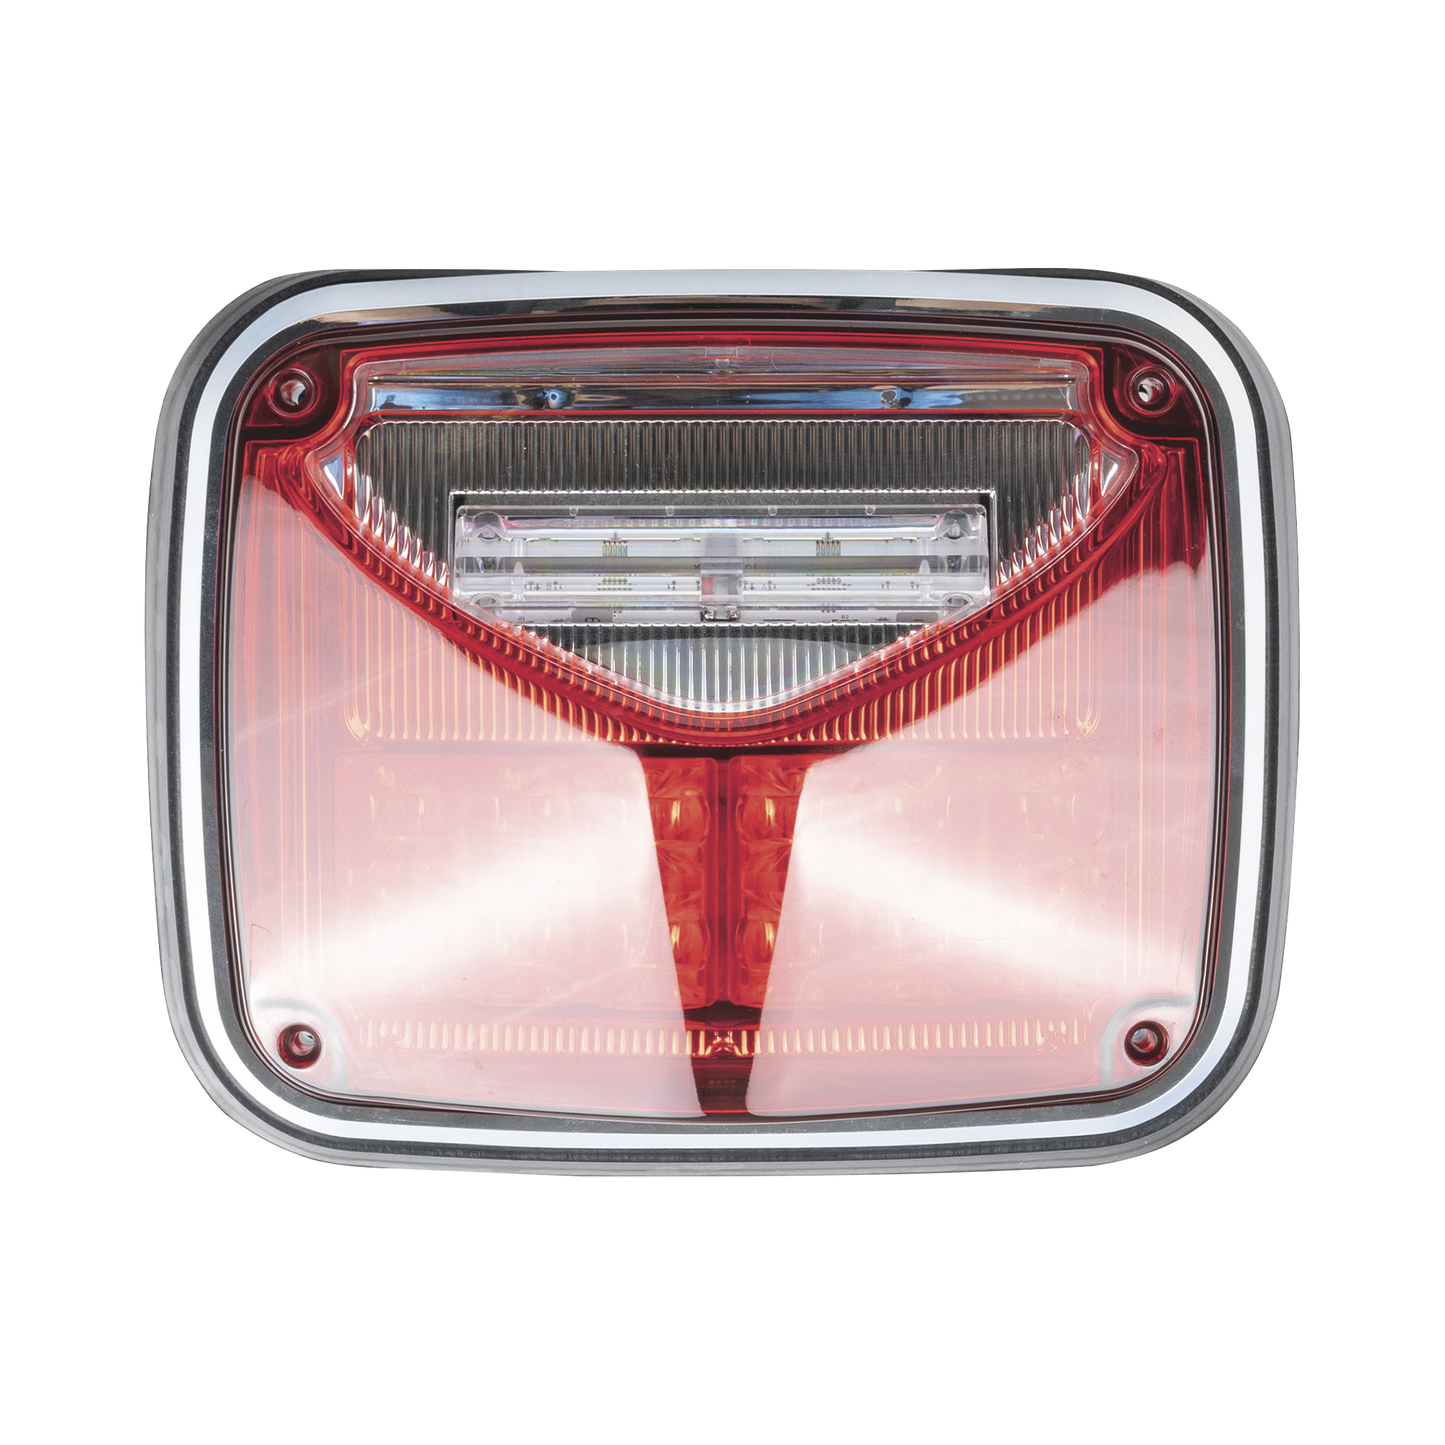 Luz de advertencia de 8 X 6", Color Rojo, Con Luz de Trabajo Clara, Ideal para Ambulancias